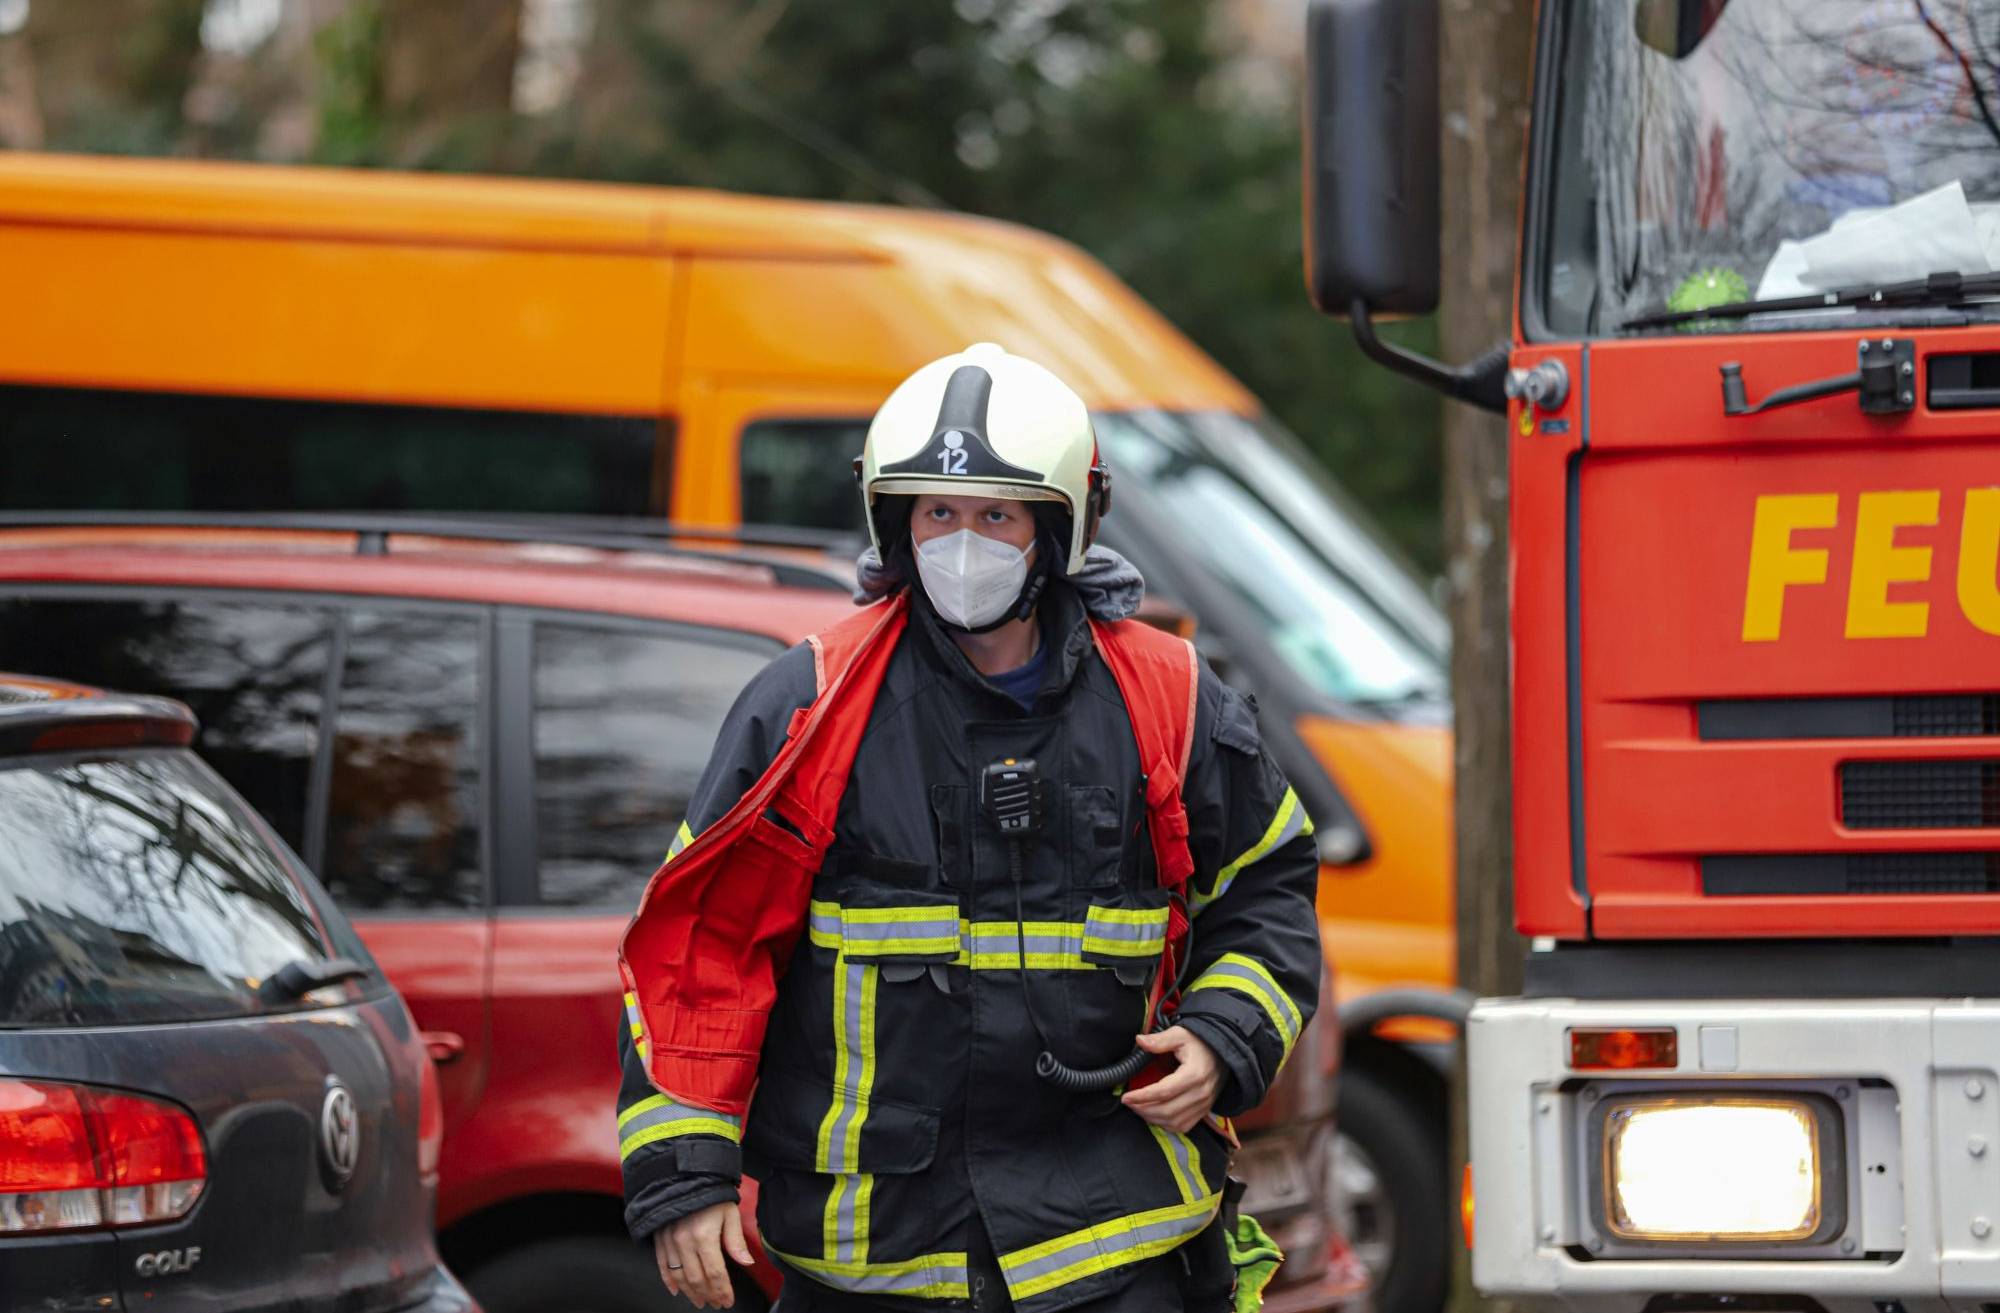 Wohnung in Wuppertal-Elberfeld nach Brand gesperrt